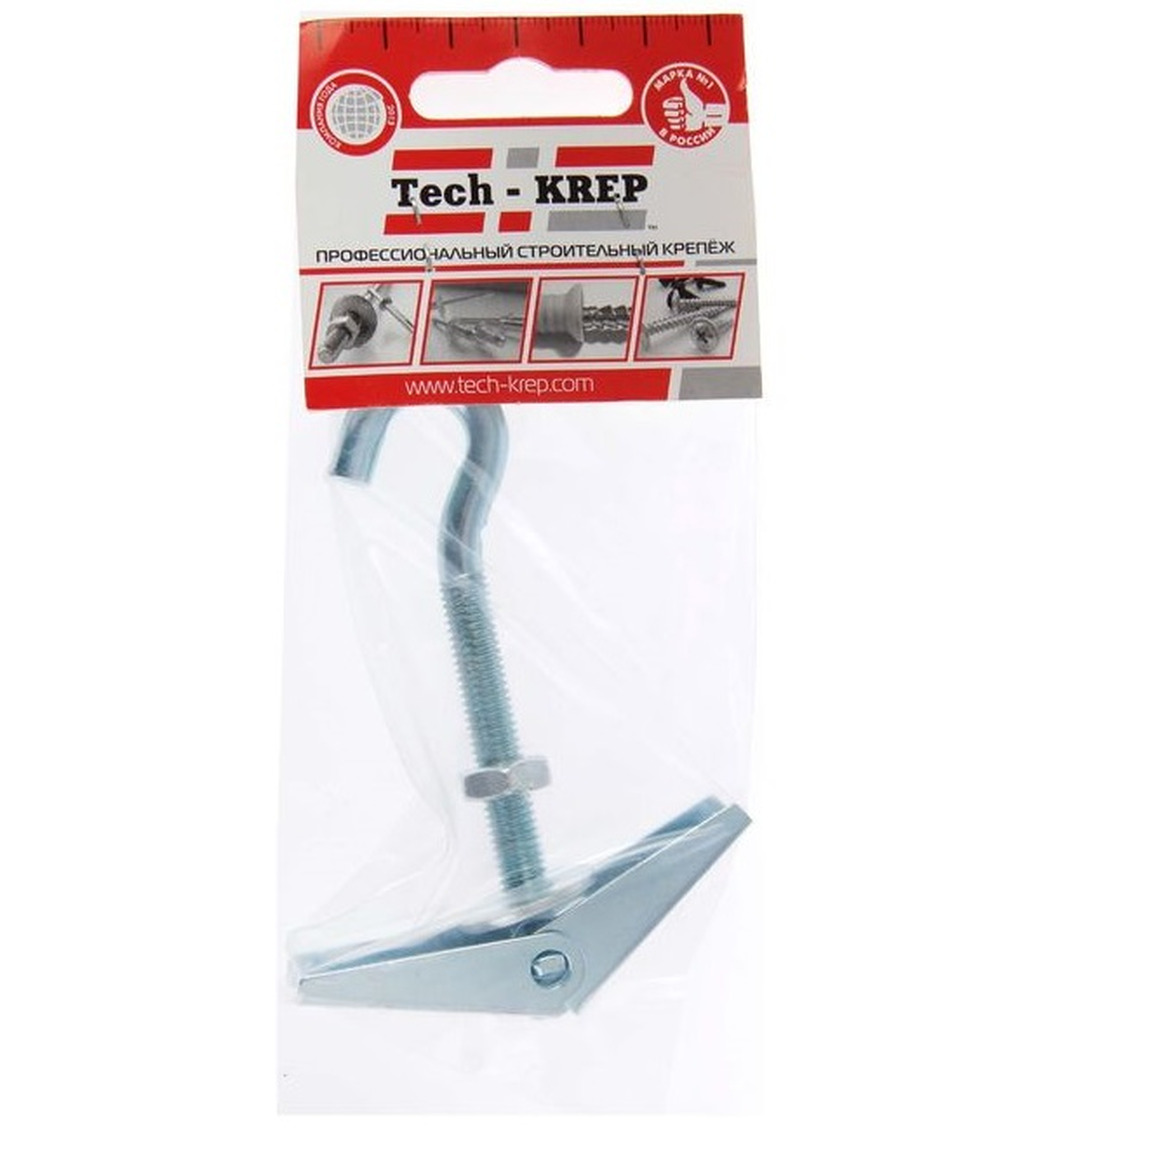 Анкер складной пружинный с крюком М8 1 шт - пакет Tech-Krep 103901 анкер складной пружинный с крюком м4 tech krep 1шт 75х4мм